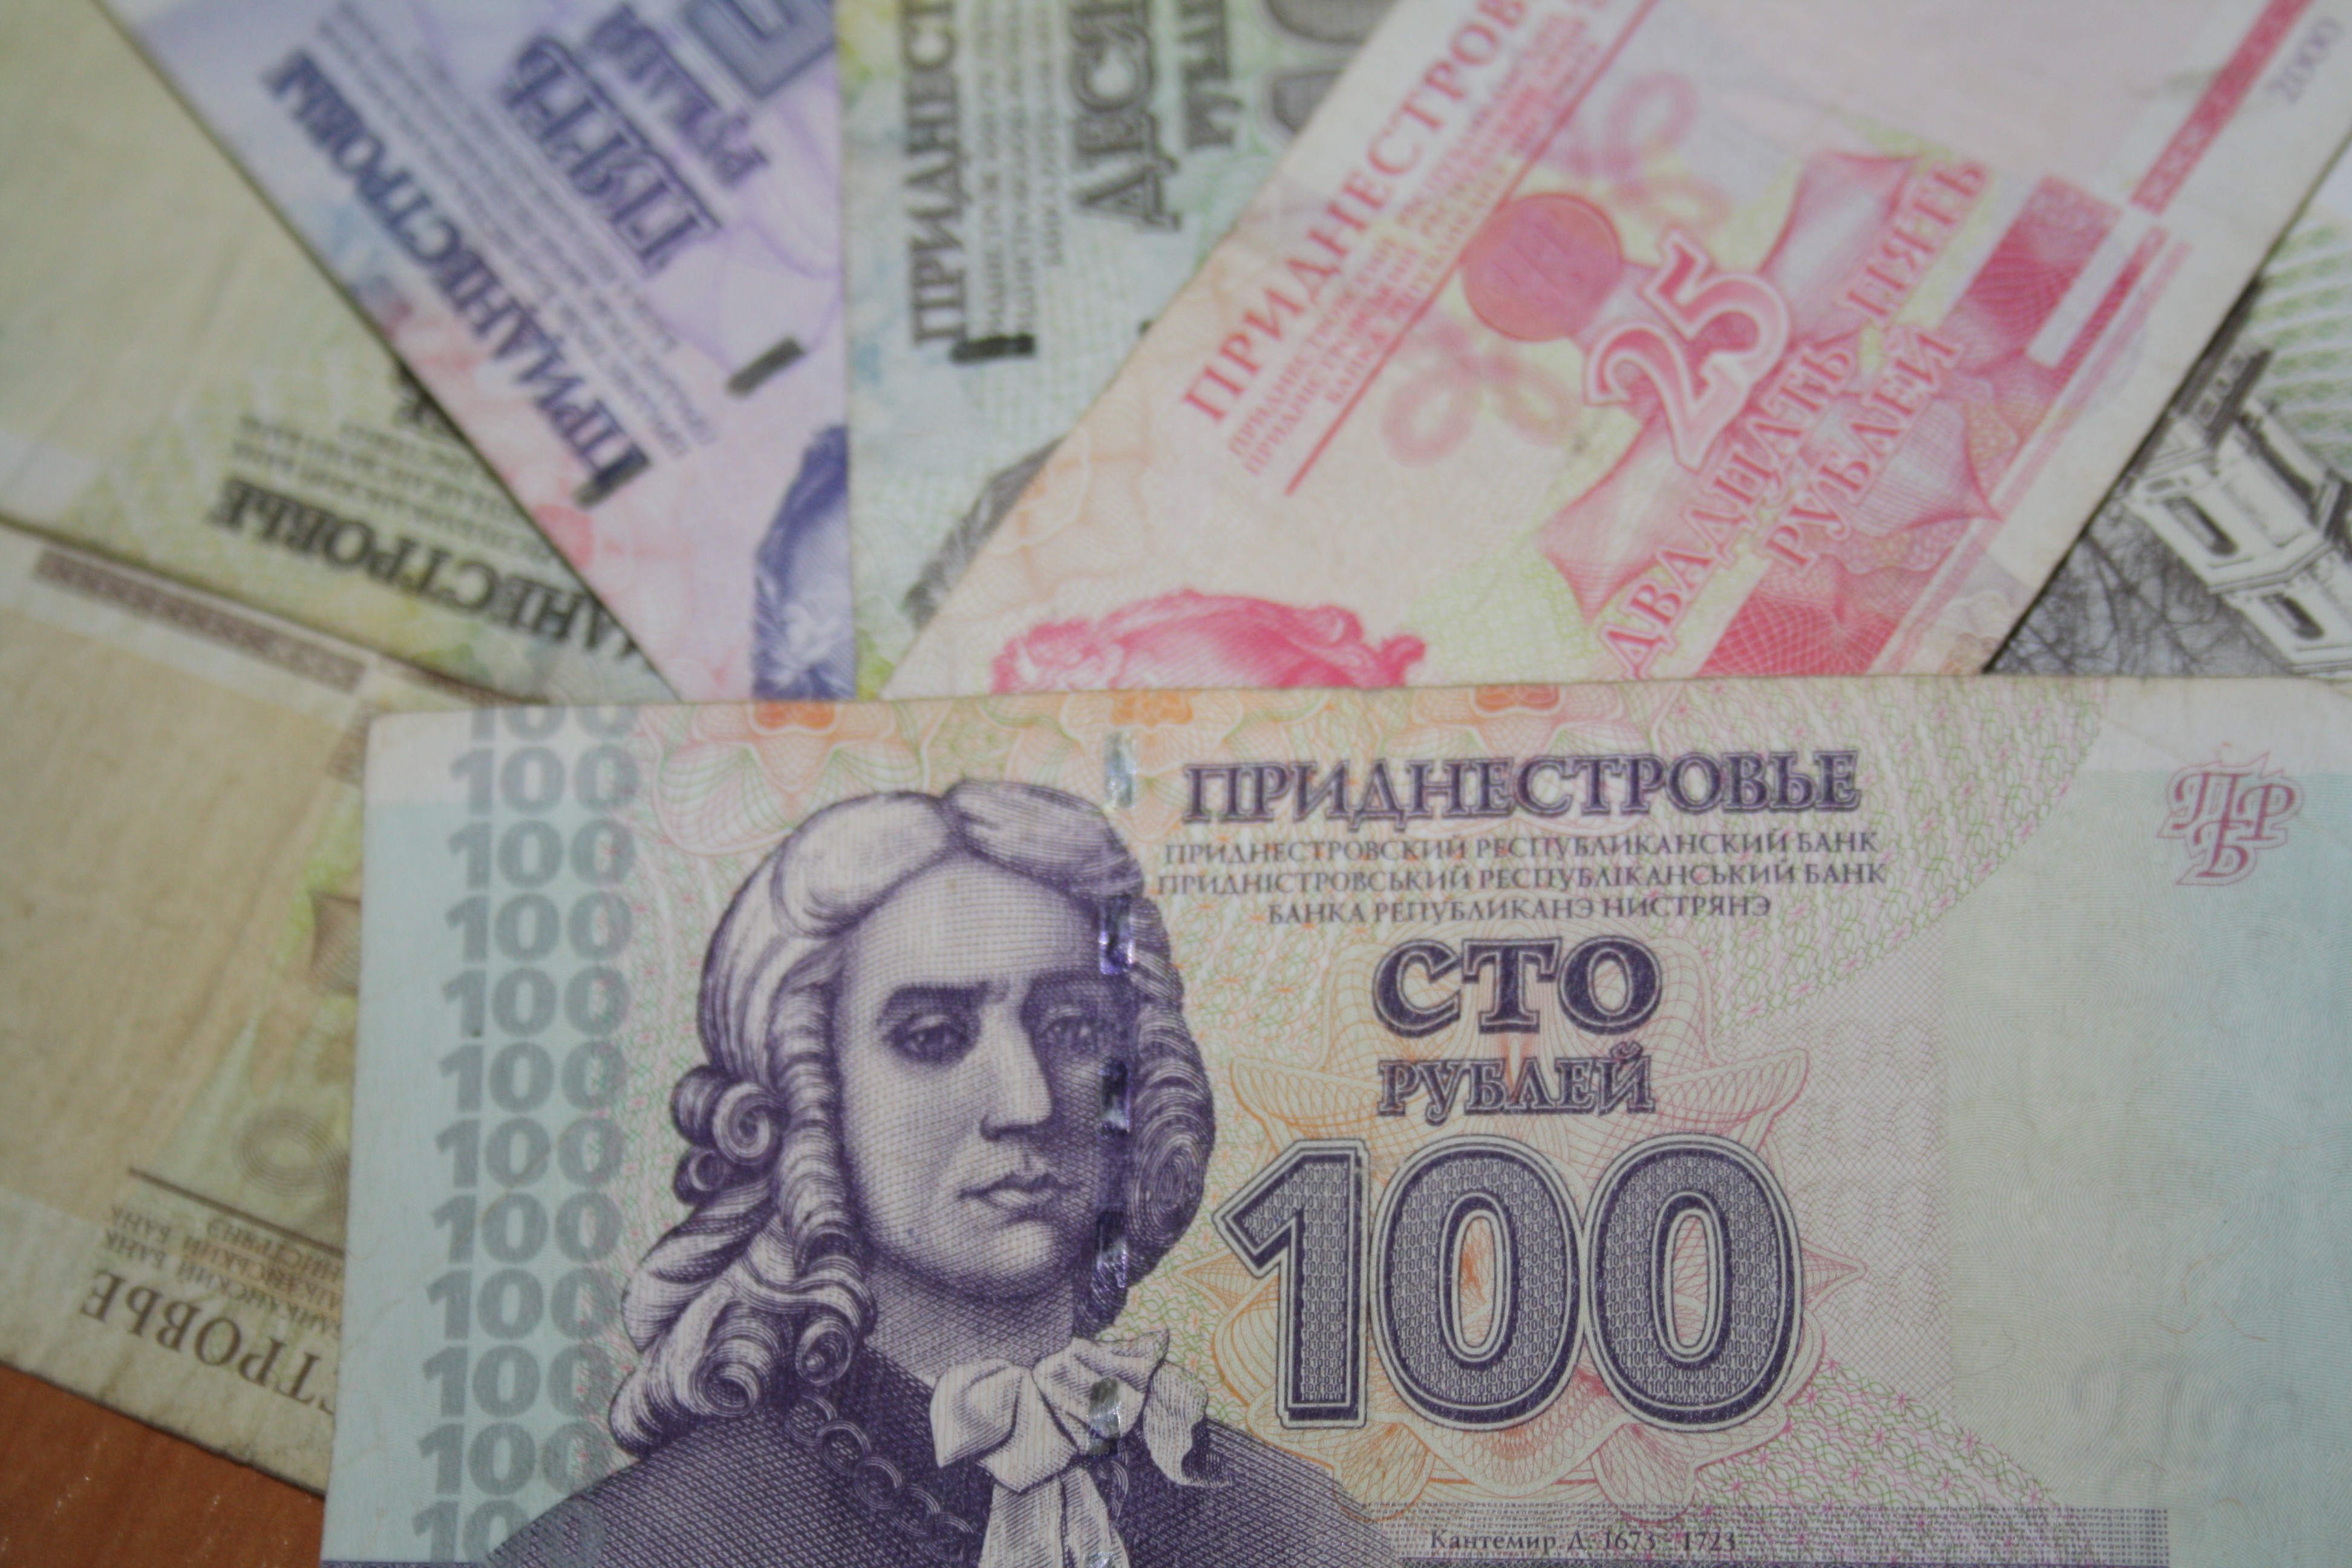 Приднестровский рубль